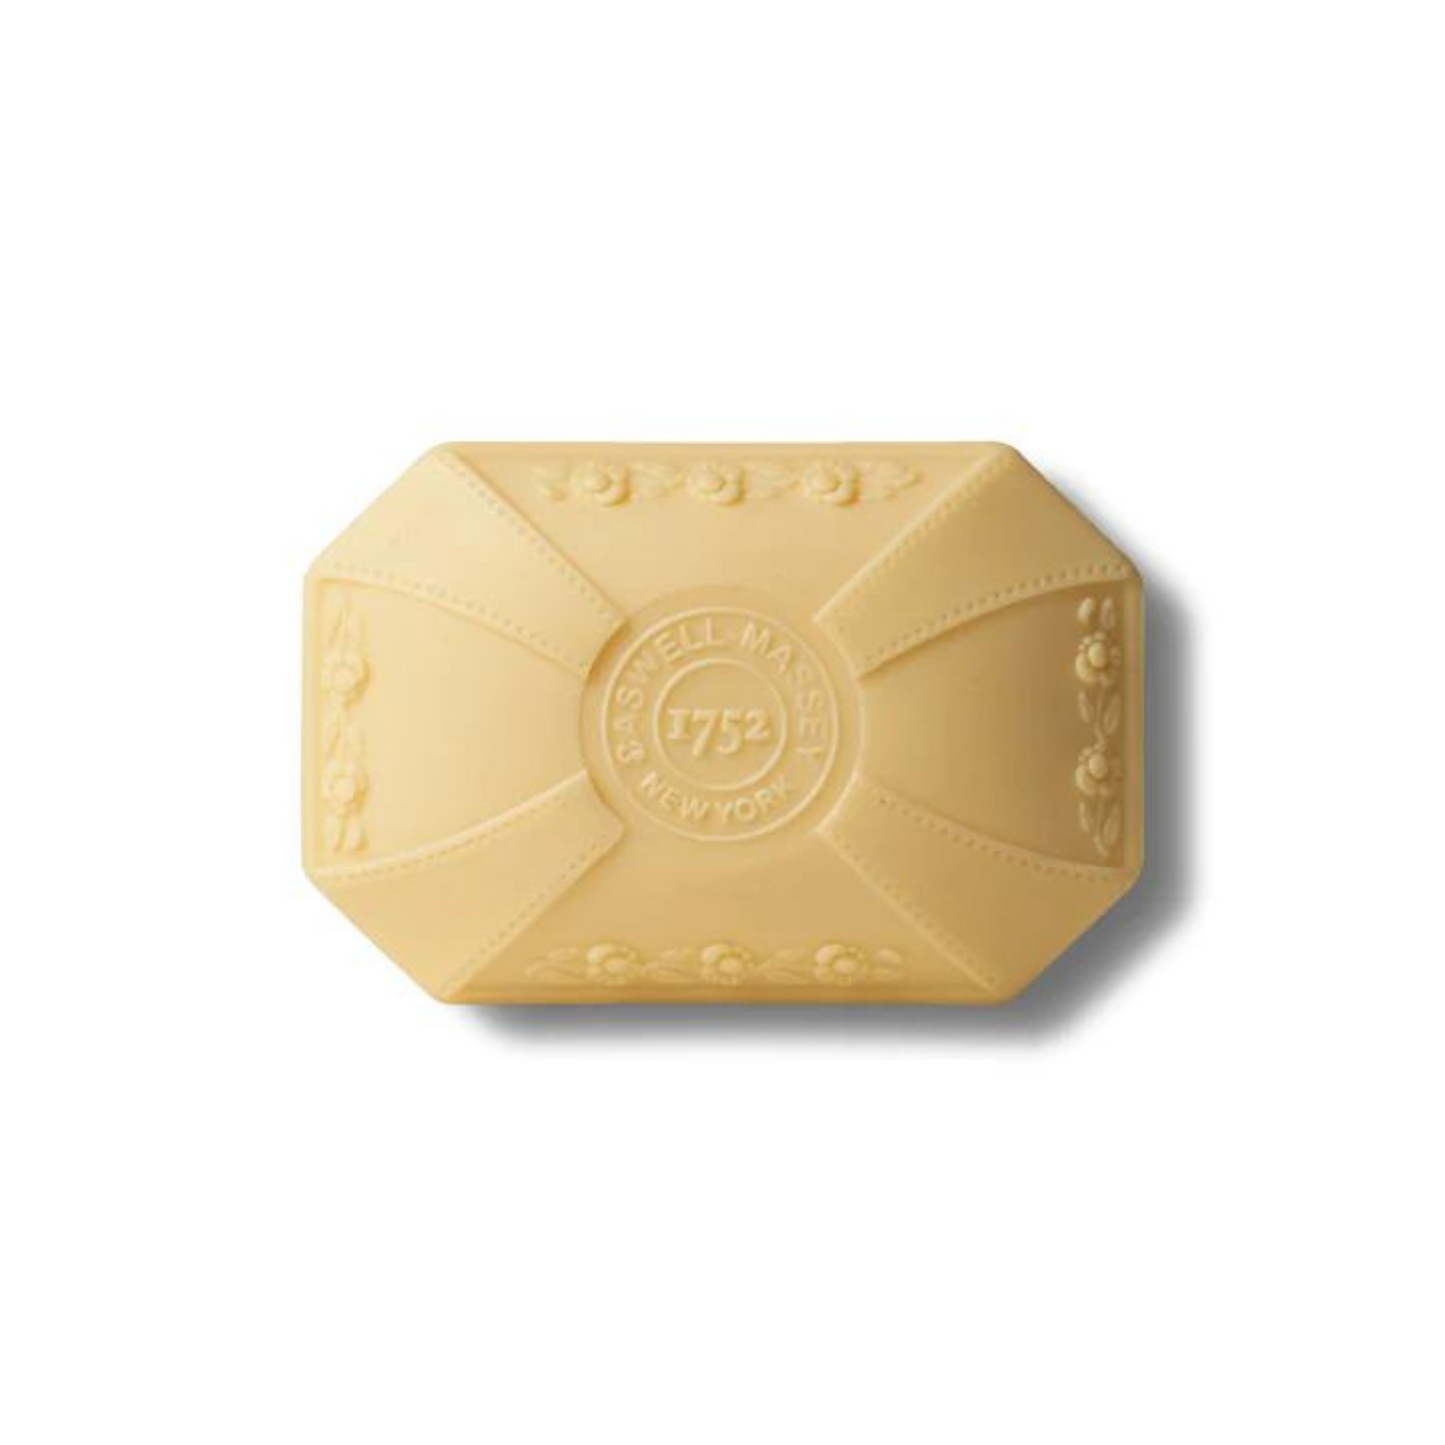 Primary Image of Marem Bar Soap (3.5 oz)